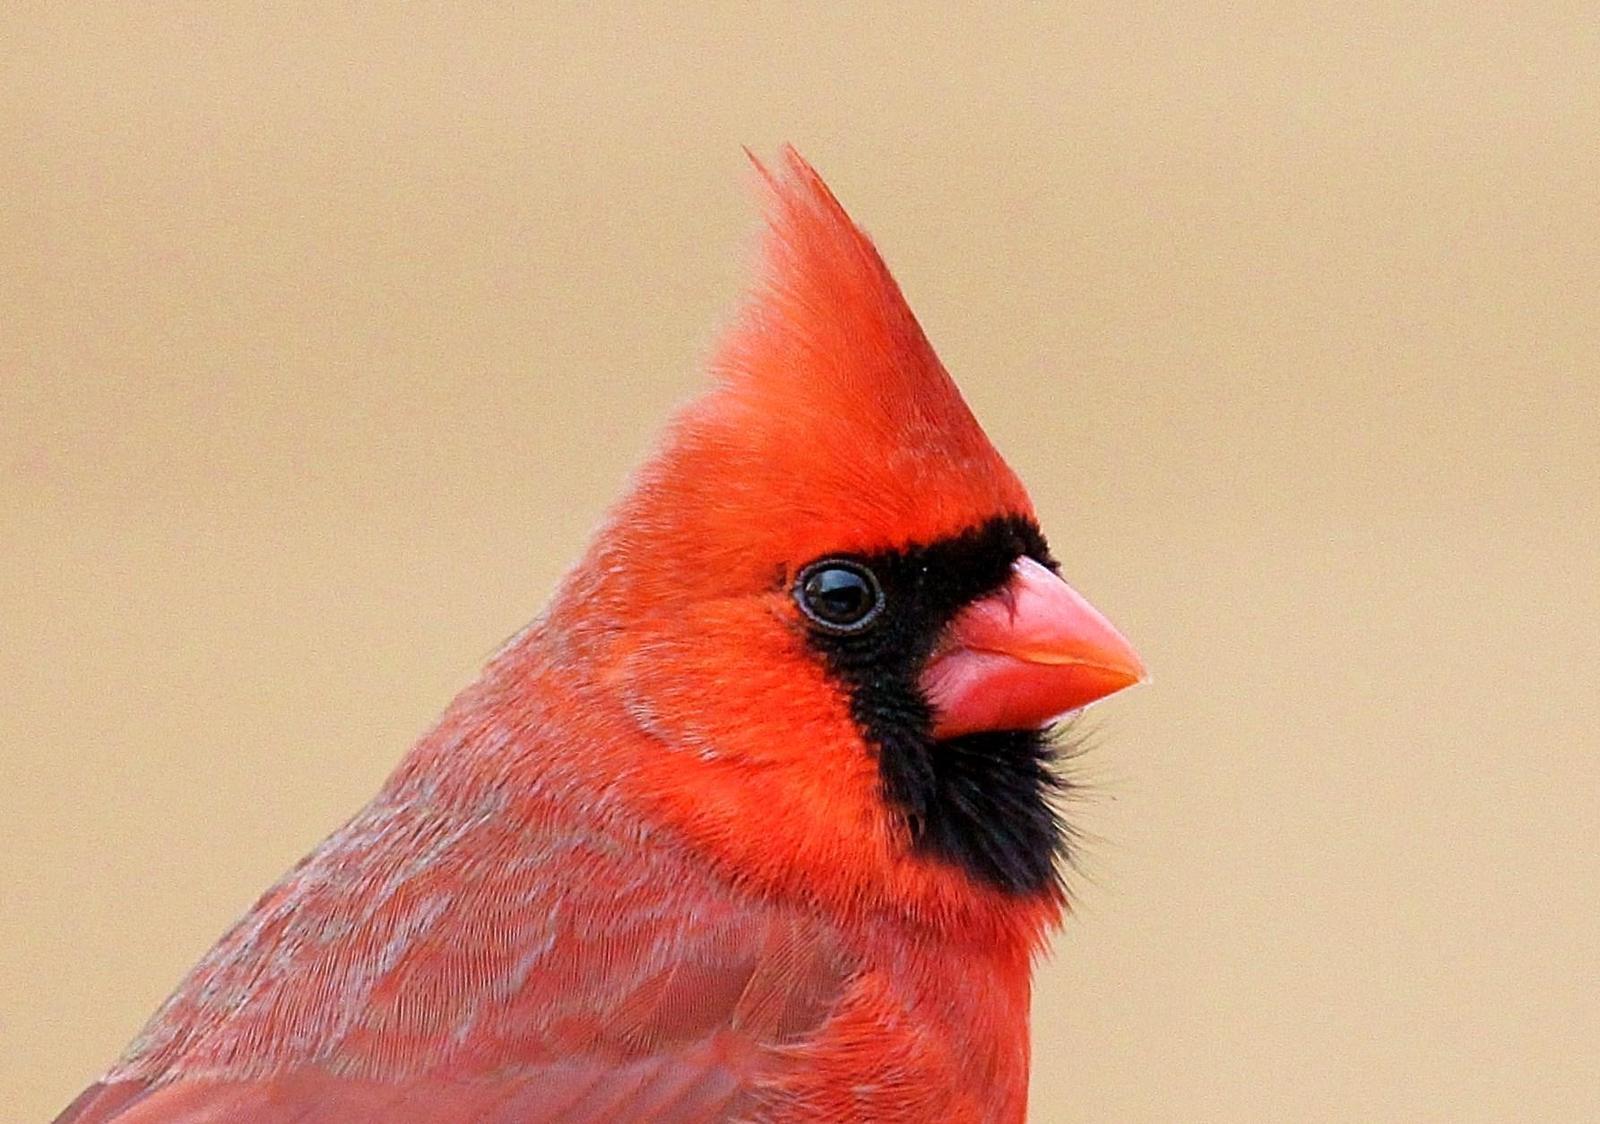 Northern Cardinal Photo by Matthew McCluskey